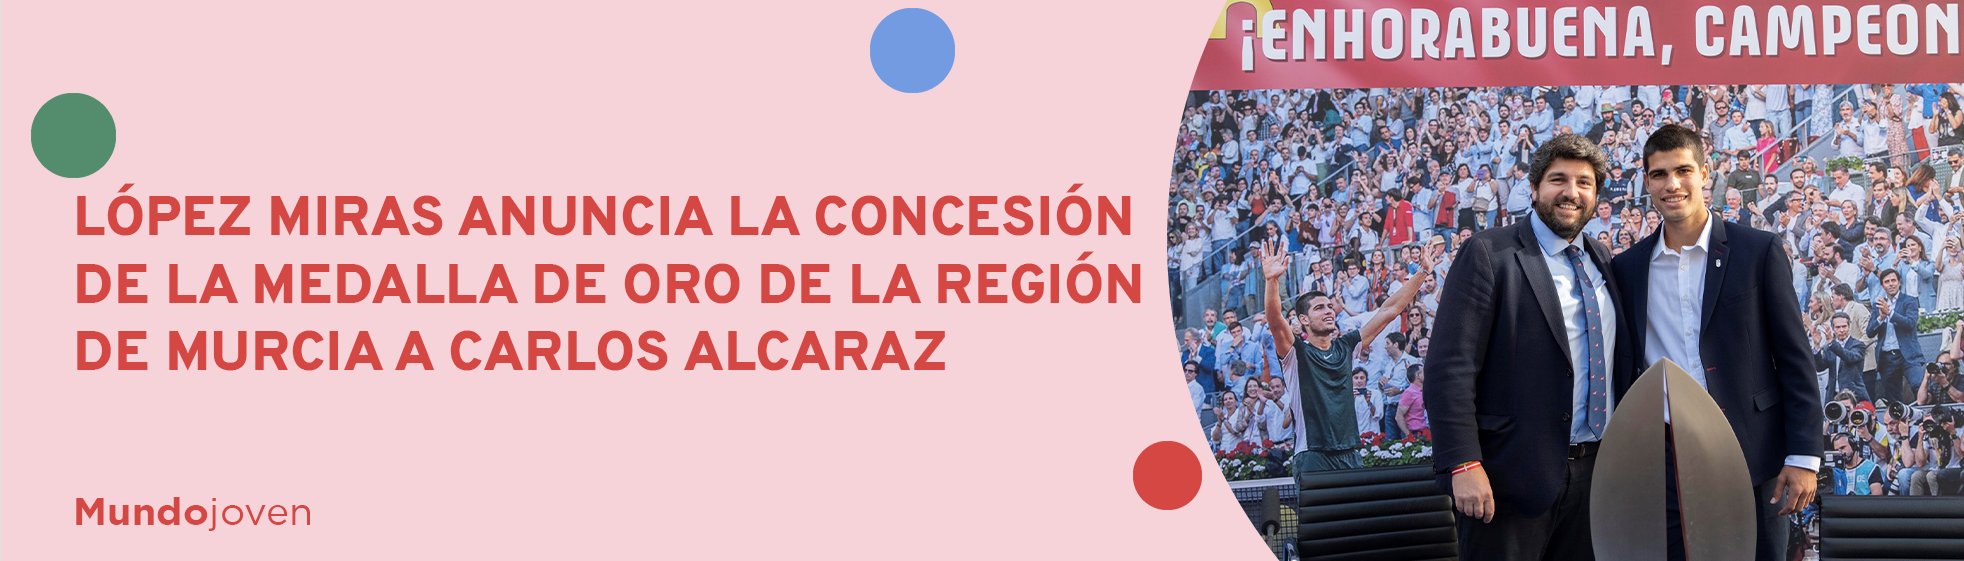 López Miras anuncia la concesión de la Medalla de Oro de la Región de Murcia a Carlos Alcaraz, 